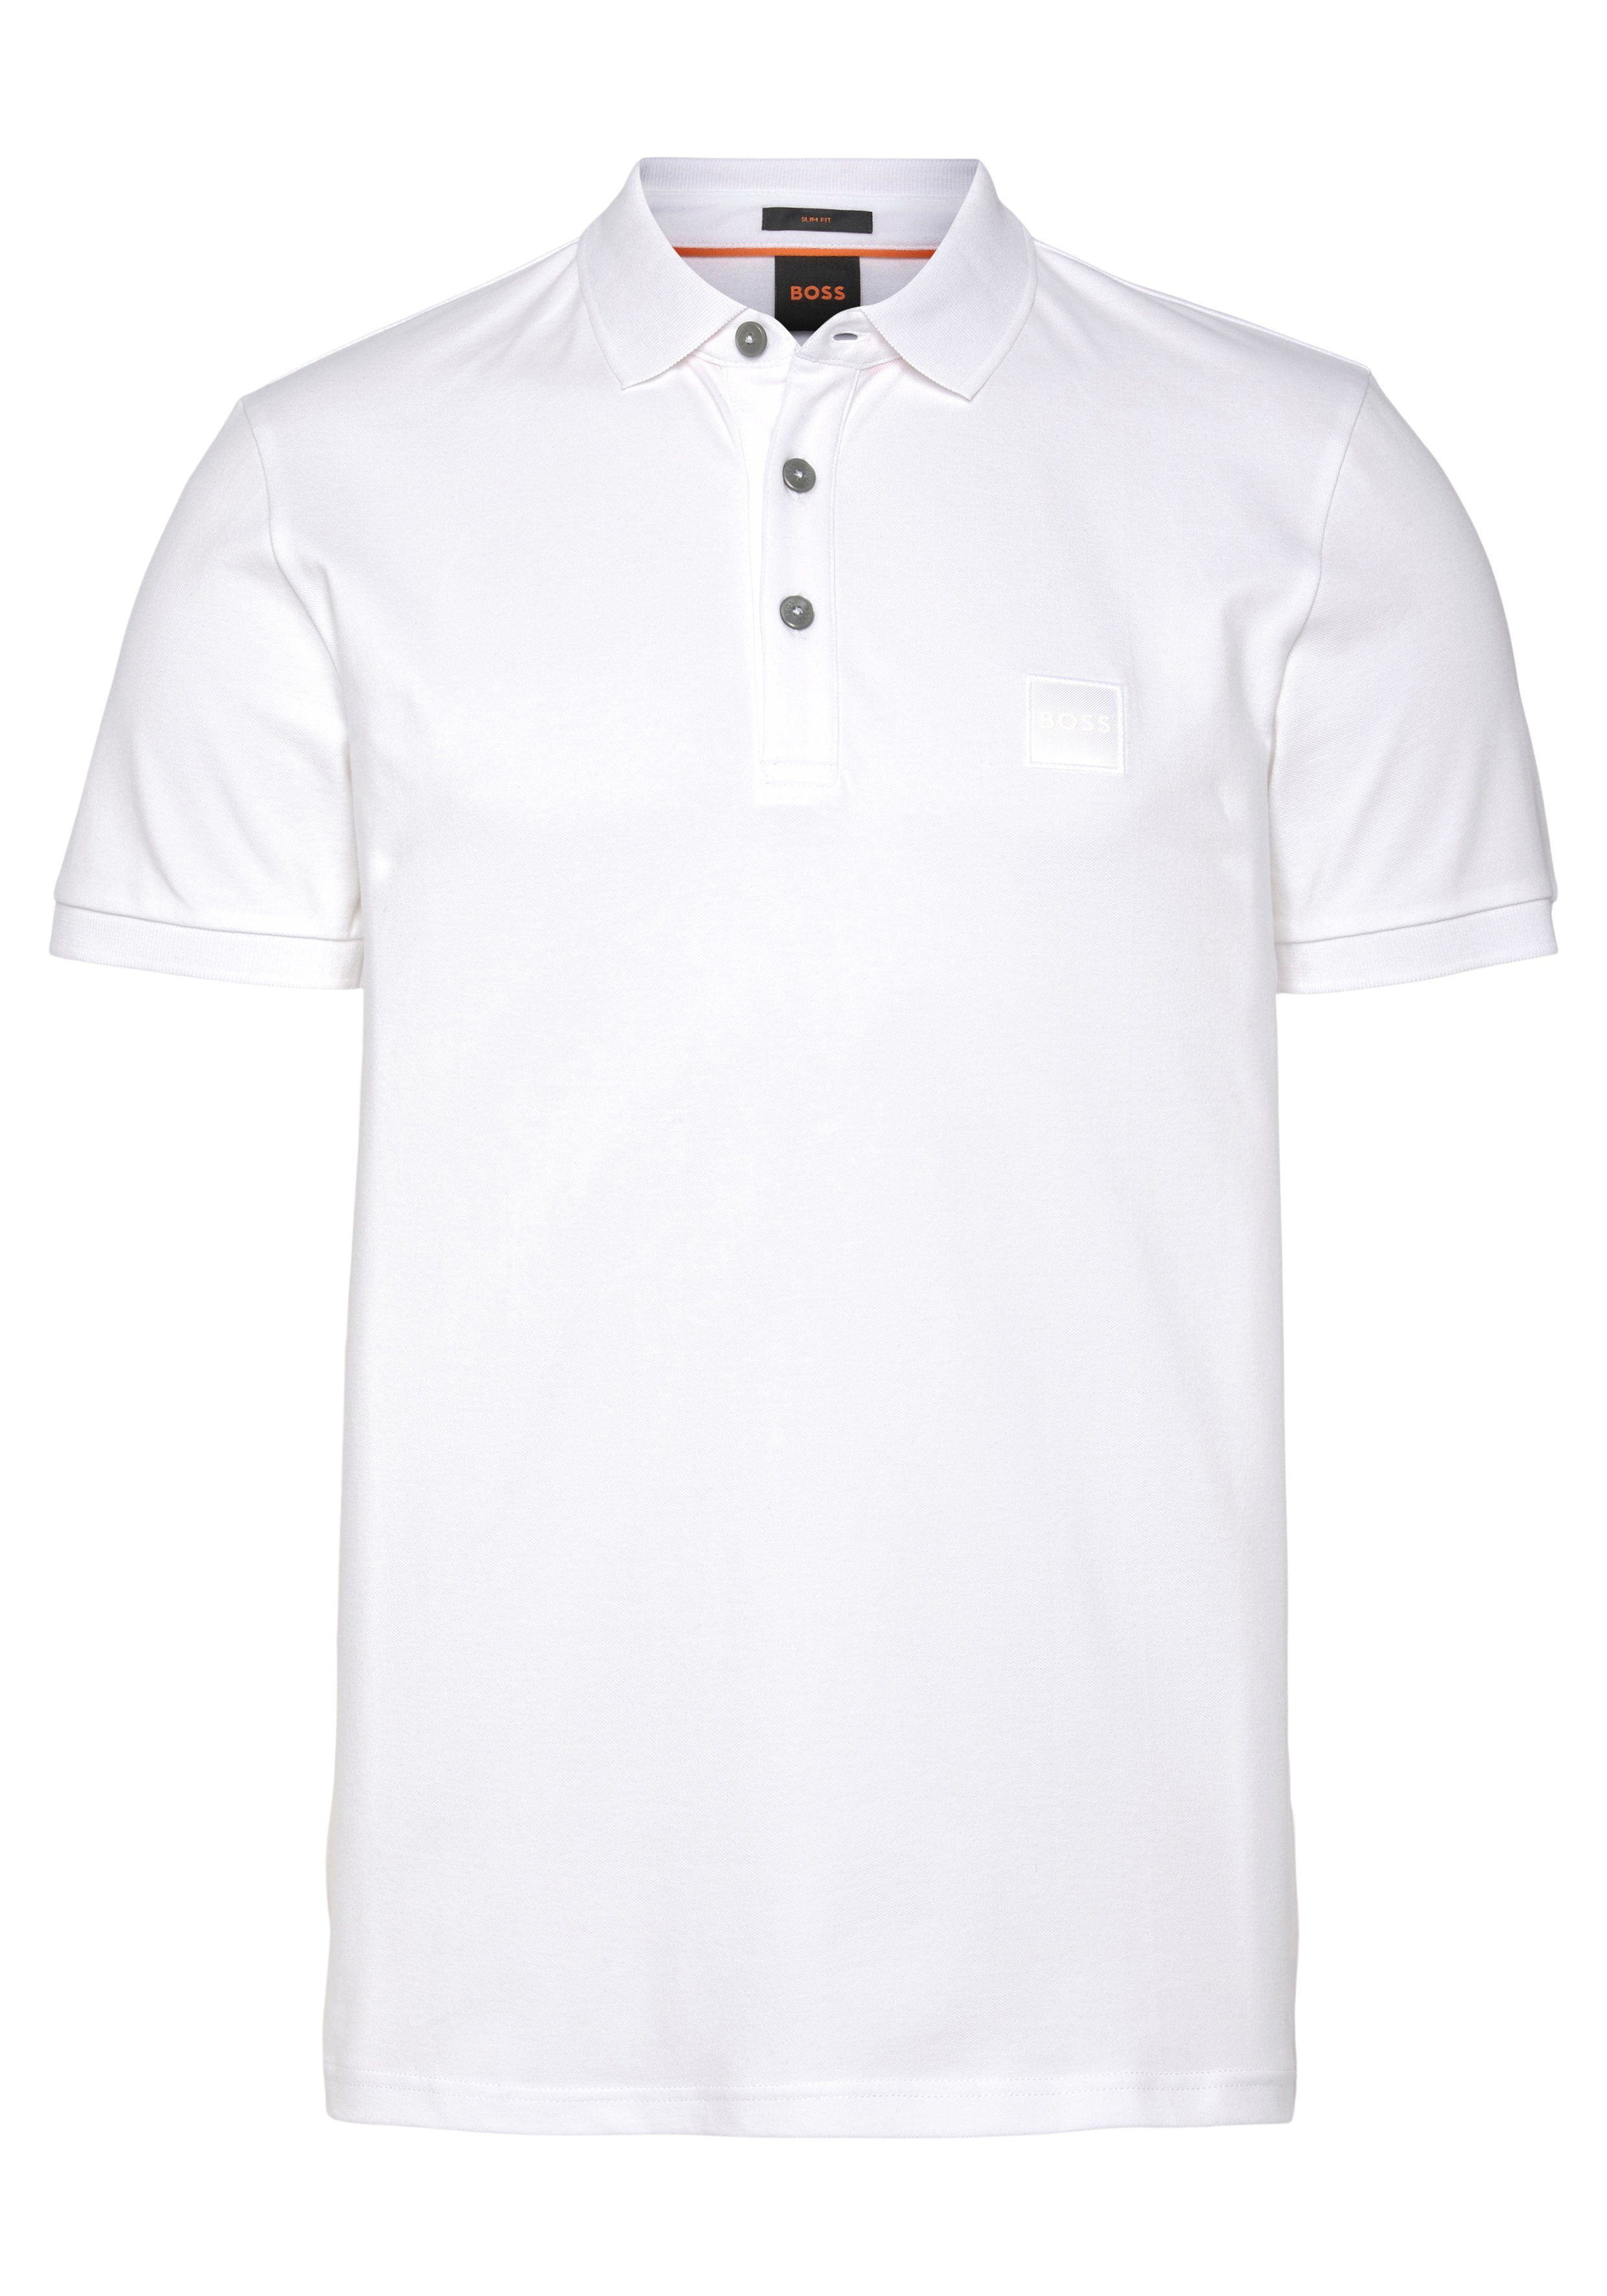 BOSS ORANGE Poloshirt Logo-Patch mit Passenger weiß BOSS von dezentem